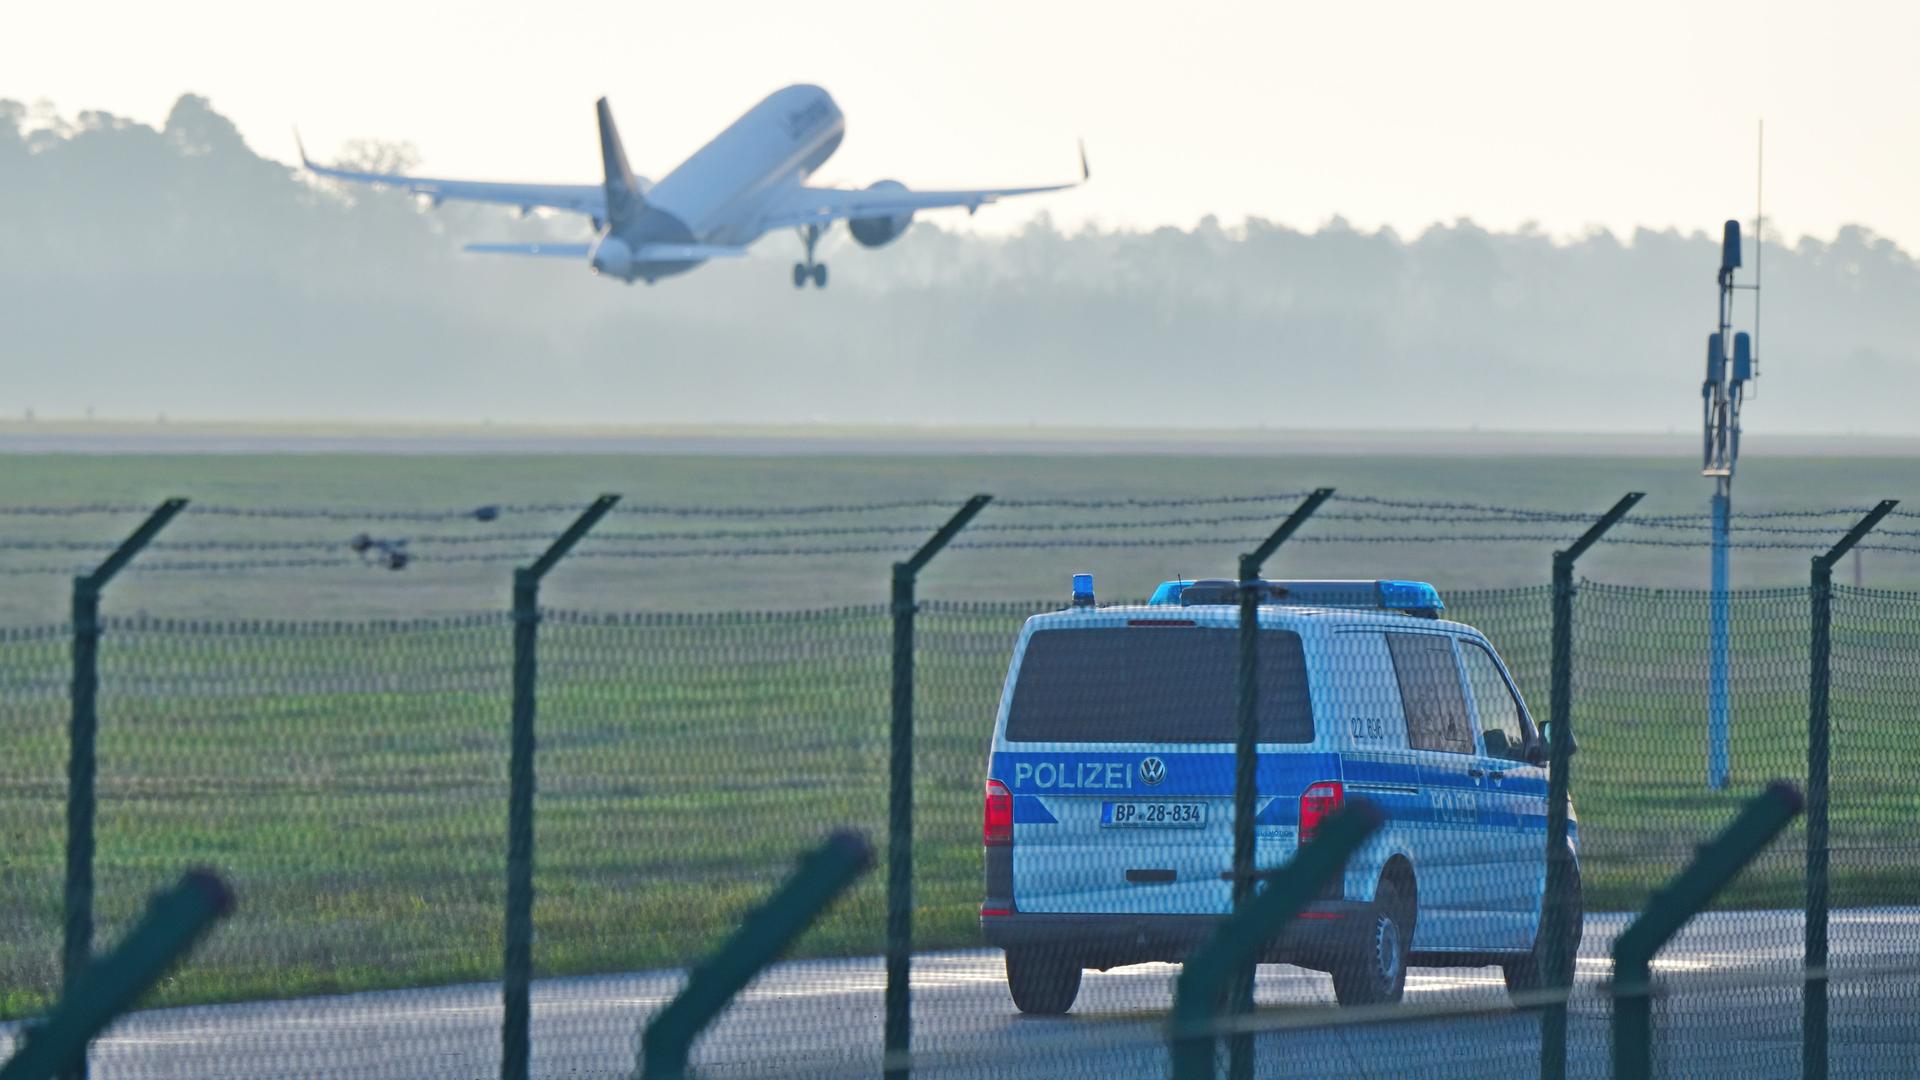 Ein Polizeiauto steht hinter einem Sicherheitszaun auf einem deutschen Flughafen. Im Hintergrund startet ein Flugzeug.